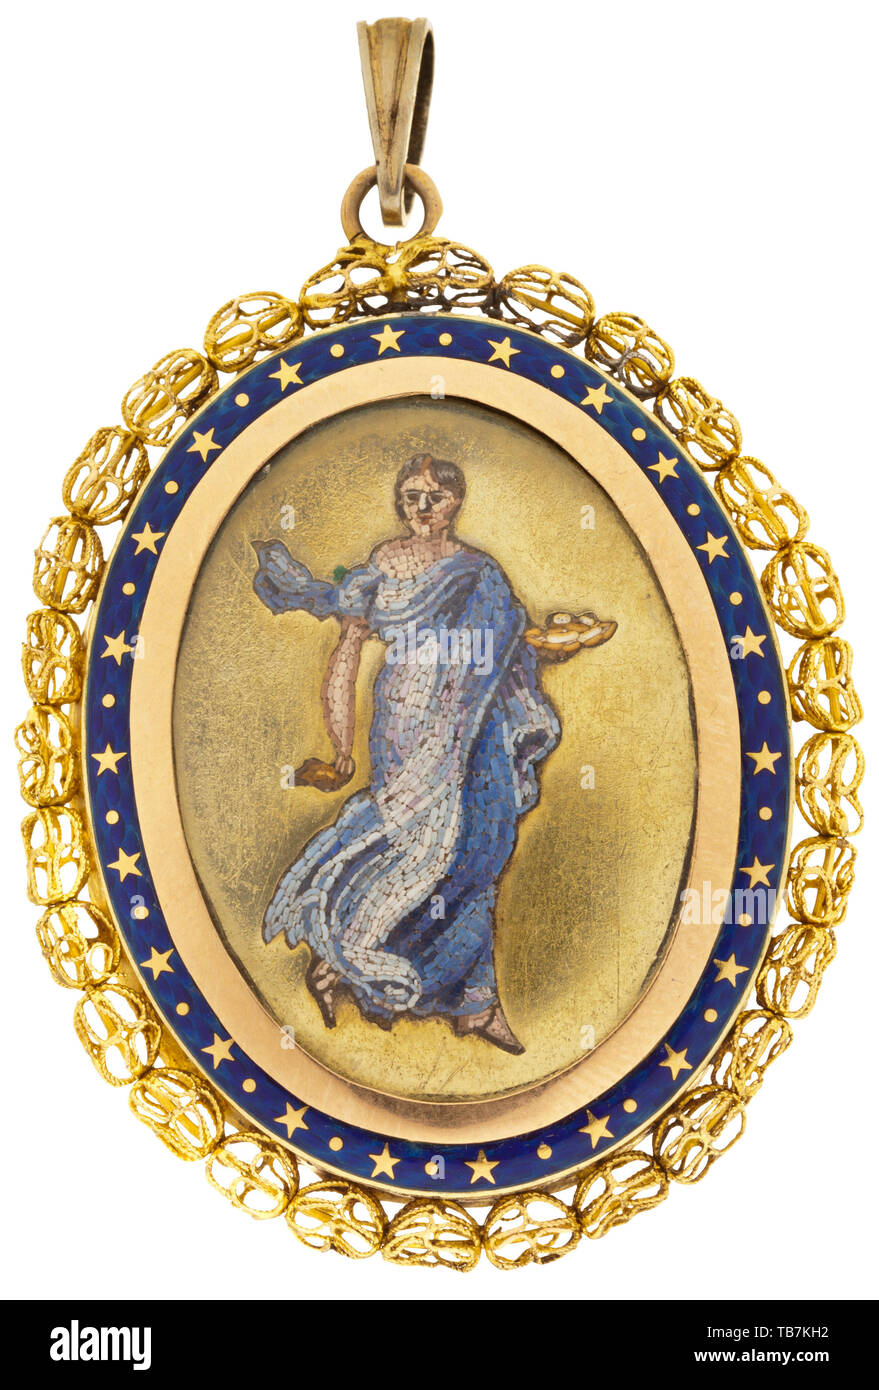 Un medallón de oro italiano con micro mosaico, 1ª mitad del siglo xix, Oval, medallón de oro amarillo. El anverso con un lucernario policromada, micro-mosaico de una dama en un vestido de estilo antiguo. Rodeado por un revestimiento de esmalte azul en tierra labrada, el borde establecido con finos cordones de filigrana. Ojal no identificados con marcas, adjunta el anillo de suspensión de plata dorada. Sin ojal dimensiones 37 x 47 mm, peso: 22,5 g. la artesanía, artesanía, artesanía, objetos, objetos, fotografías, recortes, recortes de prensa, corte, recorte, escotaduras, histórico, histórico del siglo xix, Additional-Rights-Clearance-Info-Not-Available Foto de stock